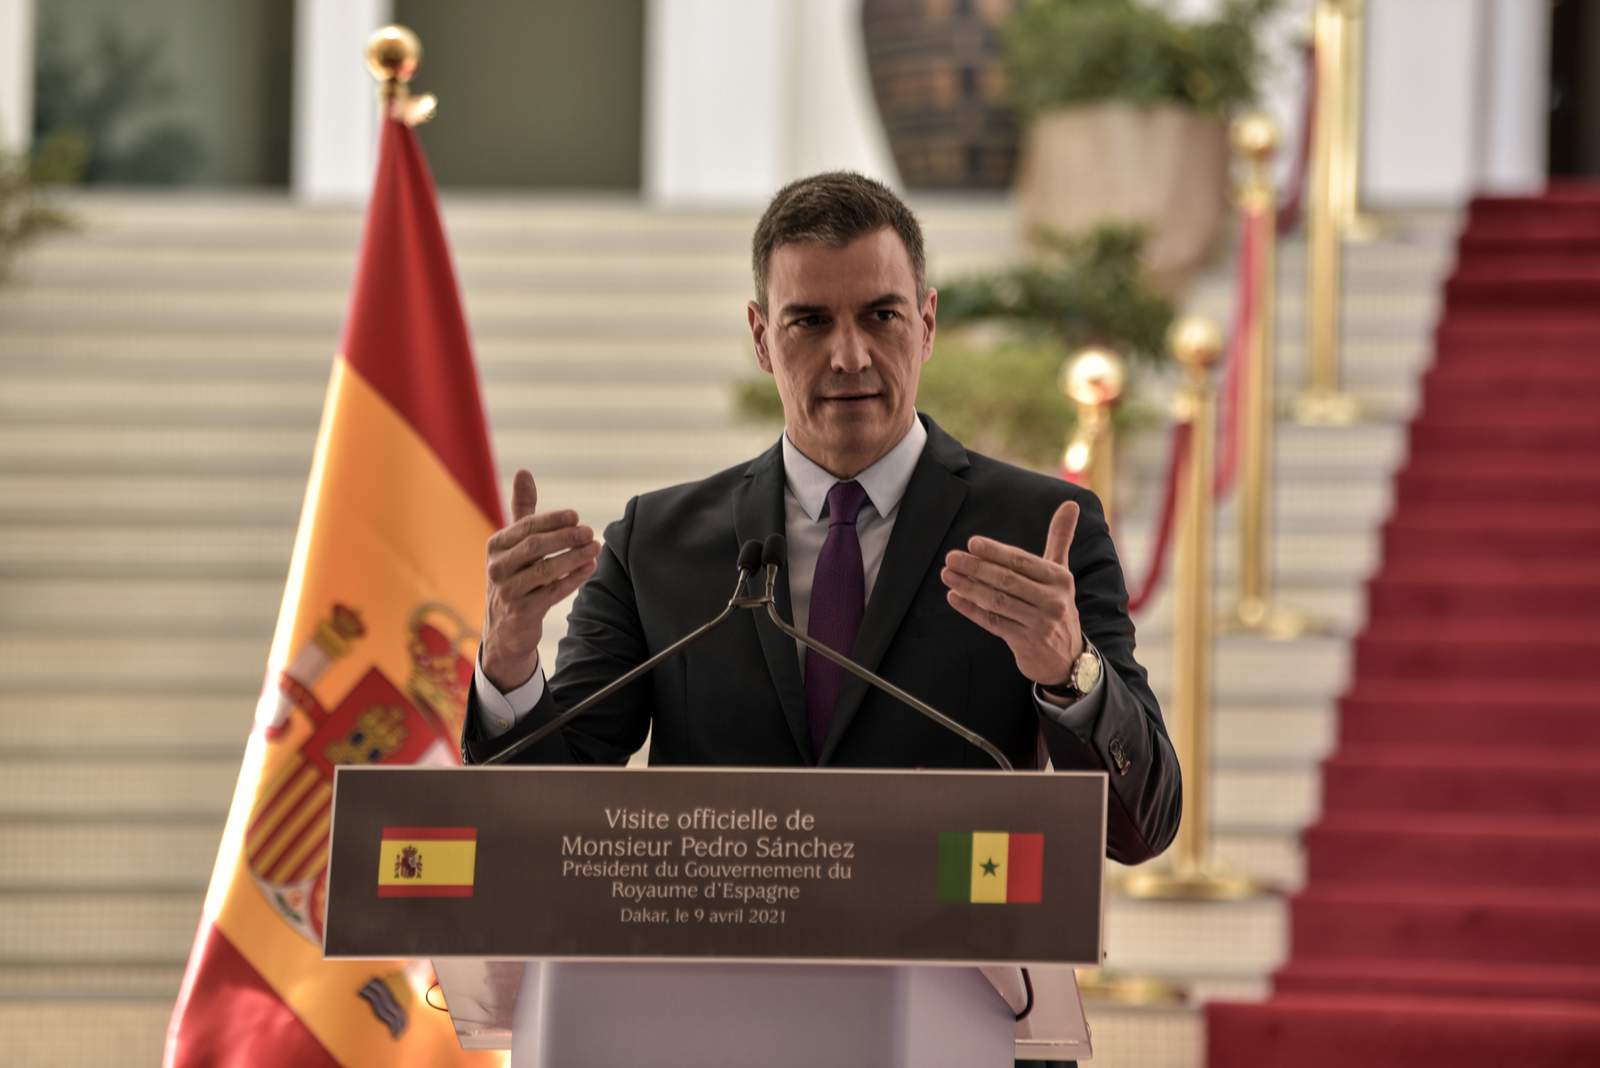 Senegal, Spain leaders seek to encourage legal migration